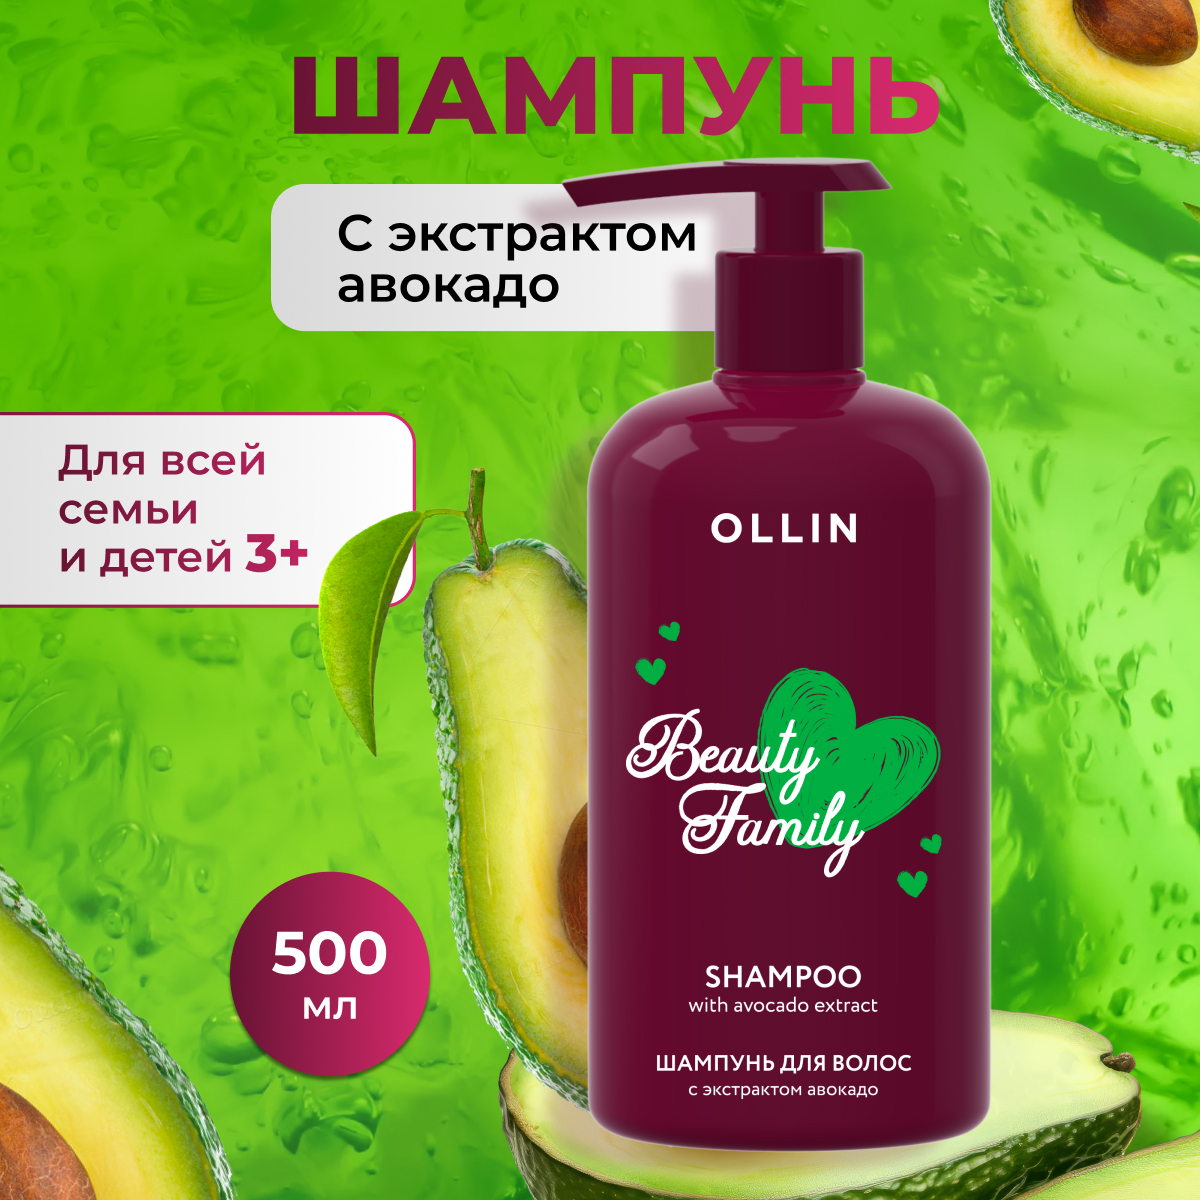 Шампунь для волос с экстрактом авокадо OLLIN BEAUTY FAMILY, 500 мл плланинг питания на три месяца авокадо на магните а4 15 листов